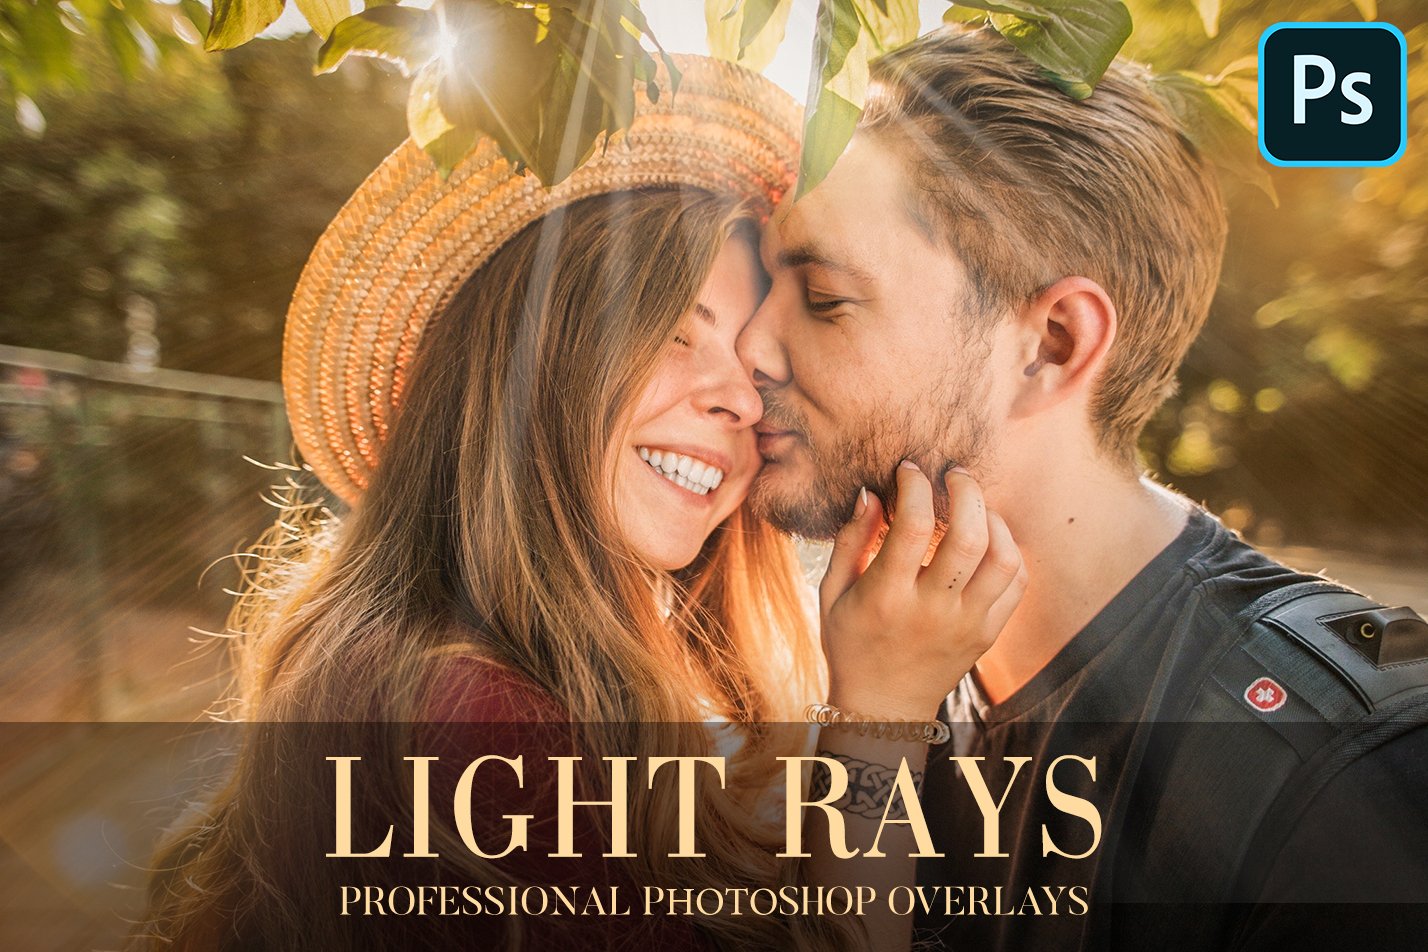 Light Rays Overlays Photoshopcover image.